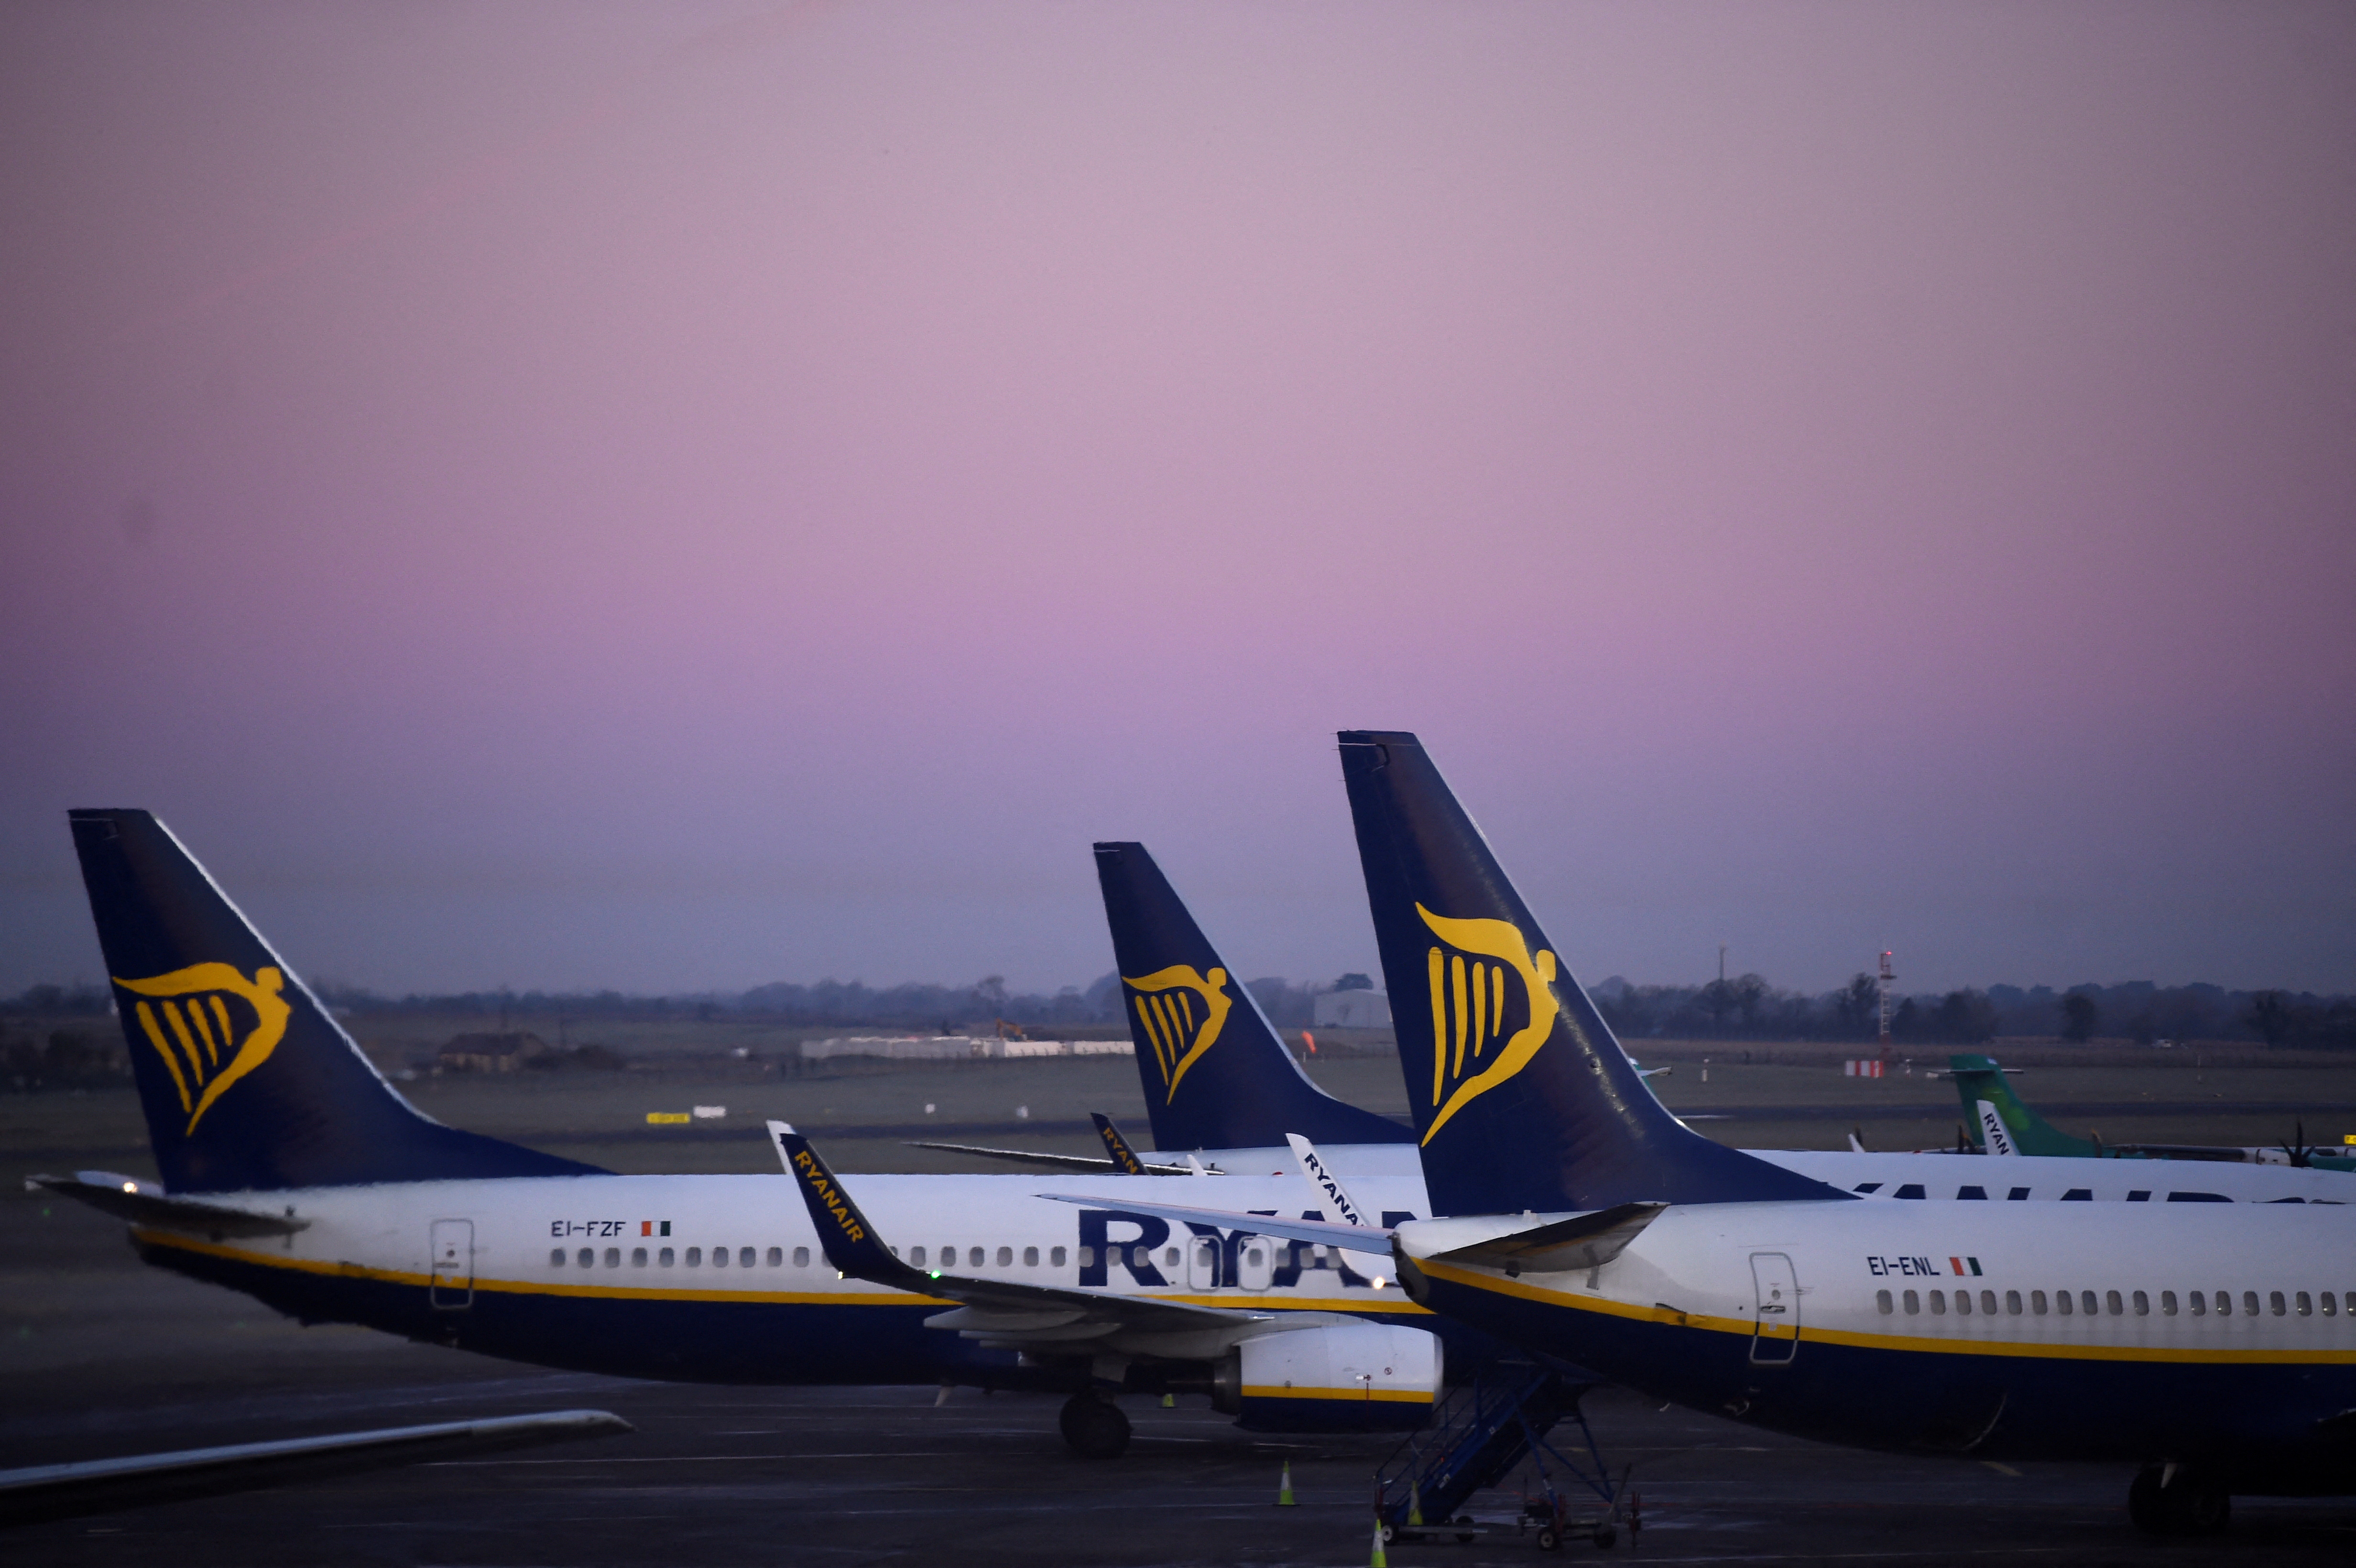 Ryanair aircraft are seen at Dublin airport Dublin